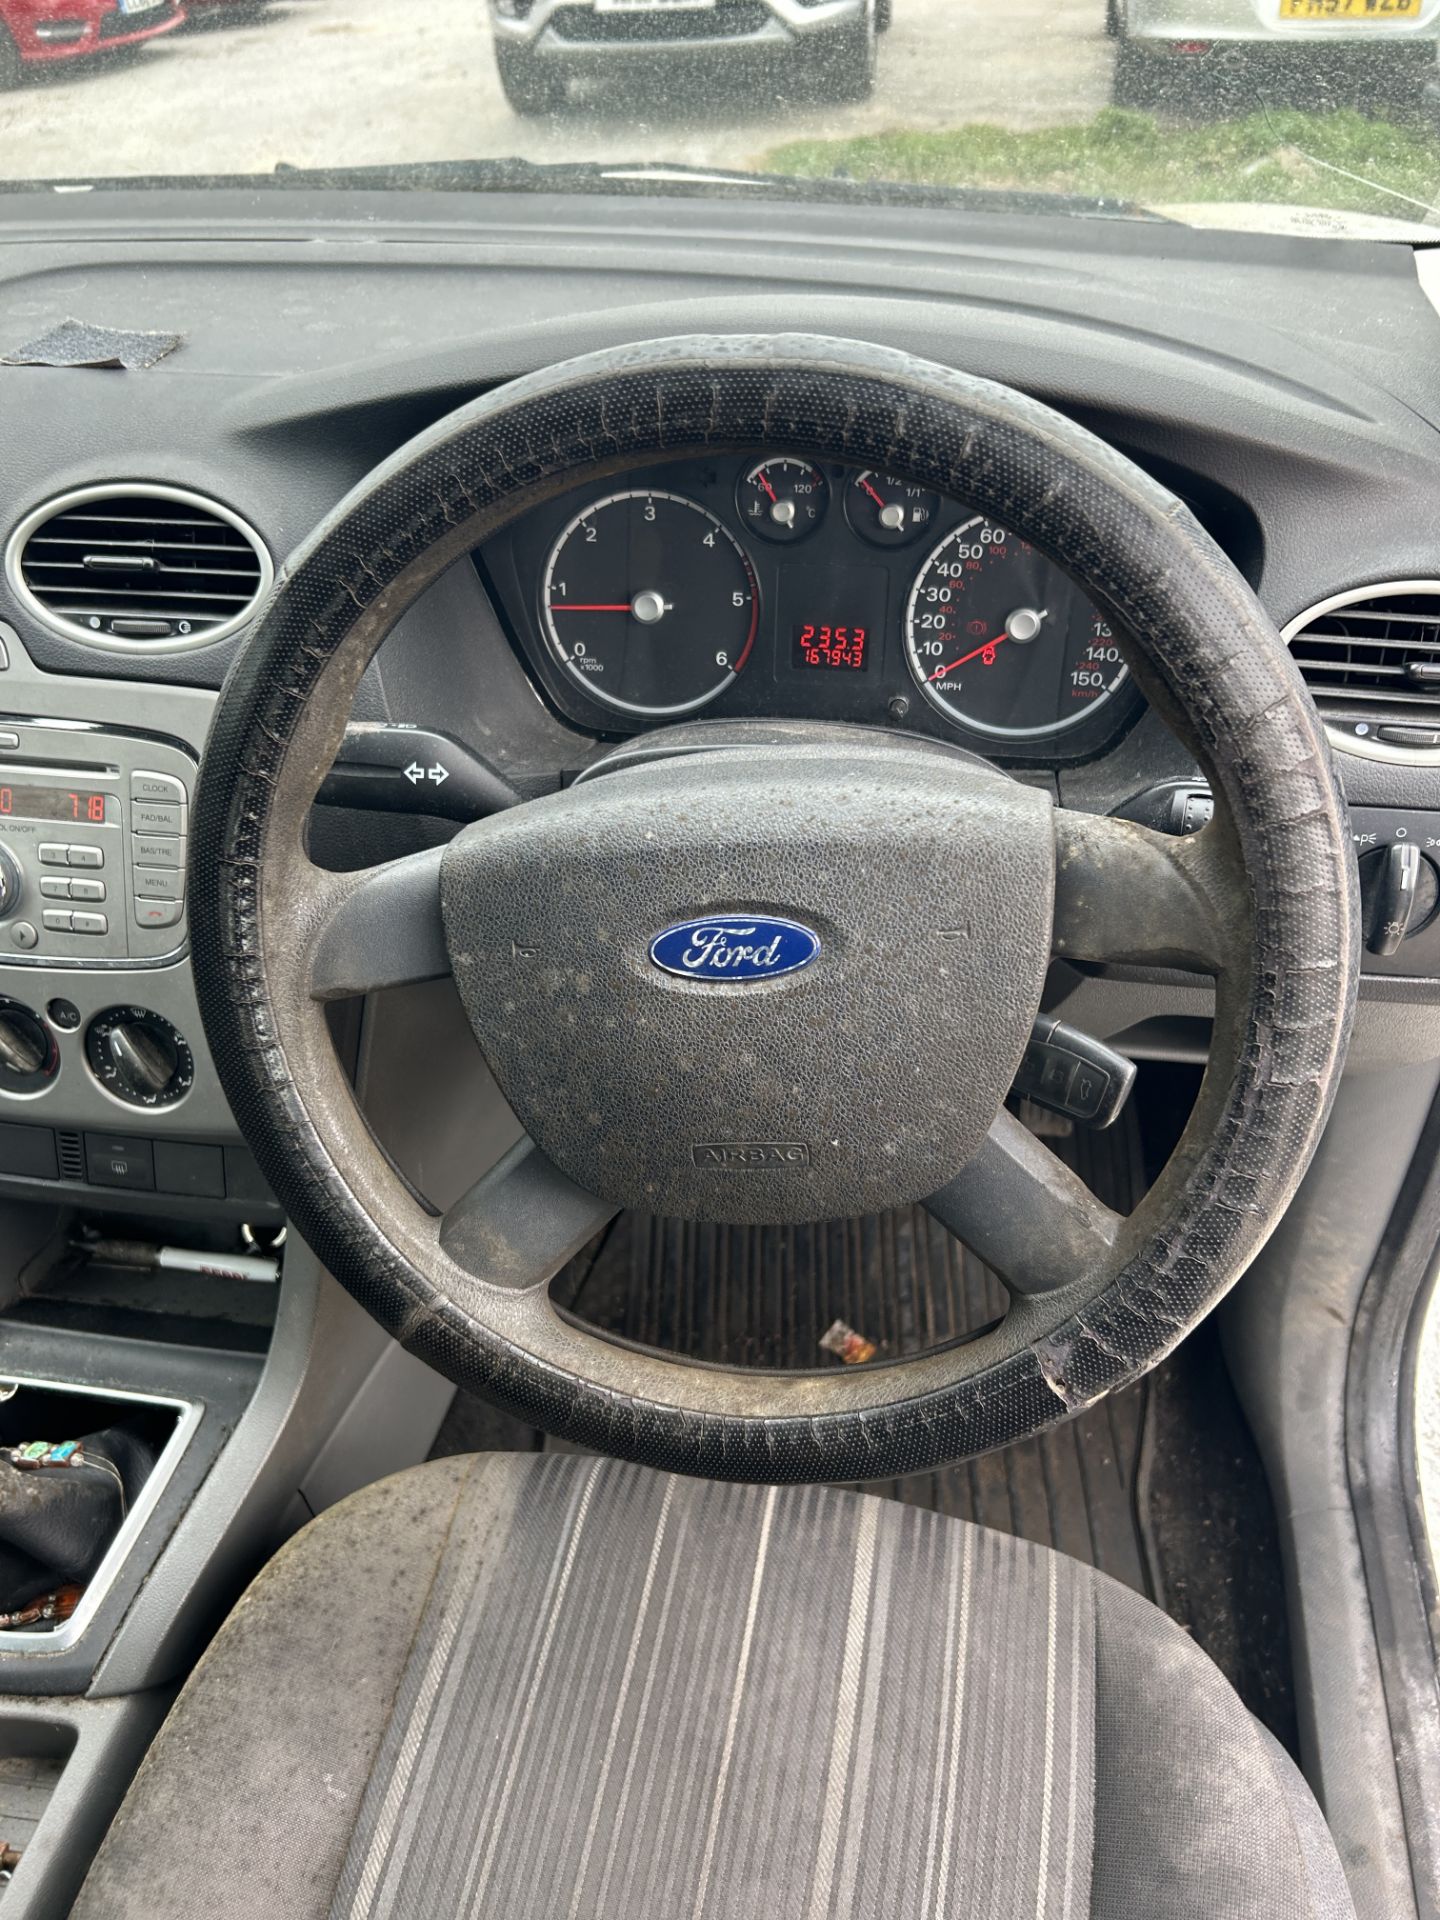 Ford Focus TD 90 Diesel Estate | YS08 CEF | 167,943 Miles | RUNNER - Image 12 of 14